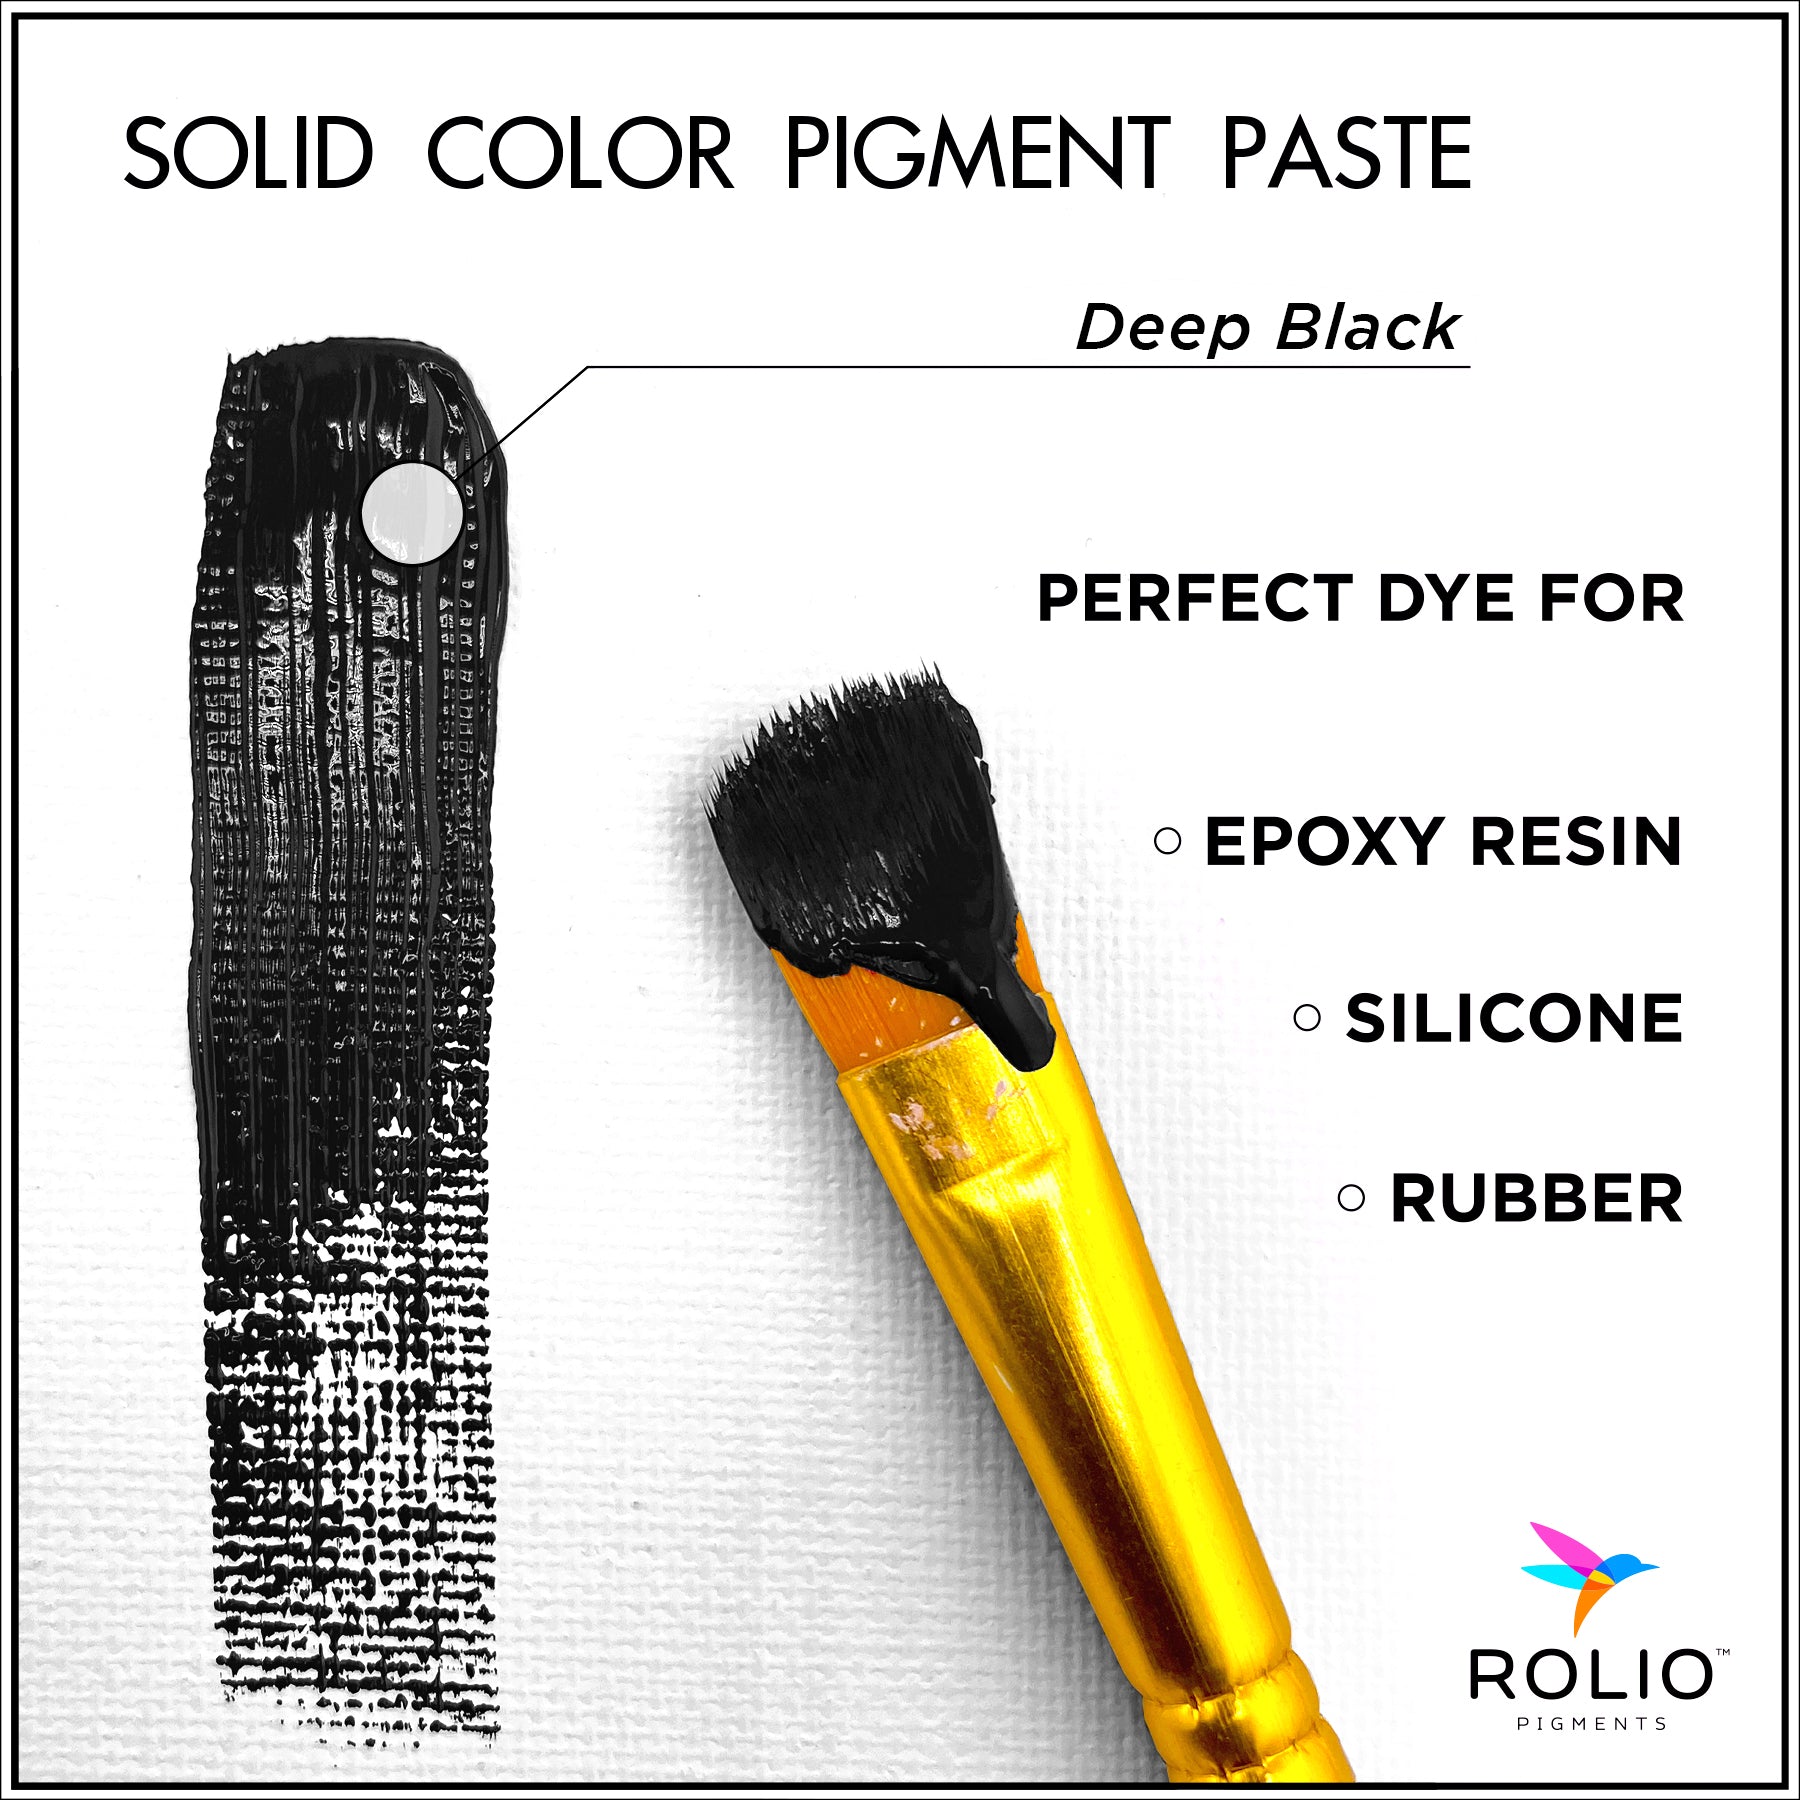 Deep-Black-Pigment-Paste-Description.jpg